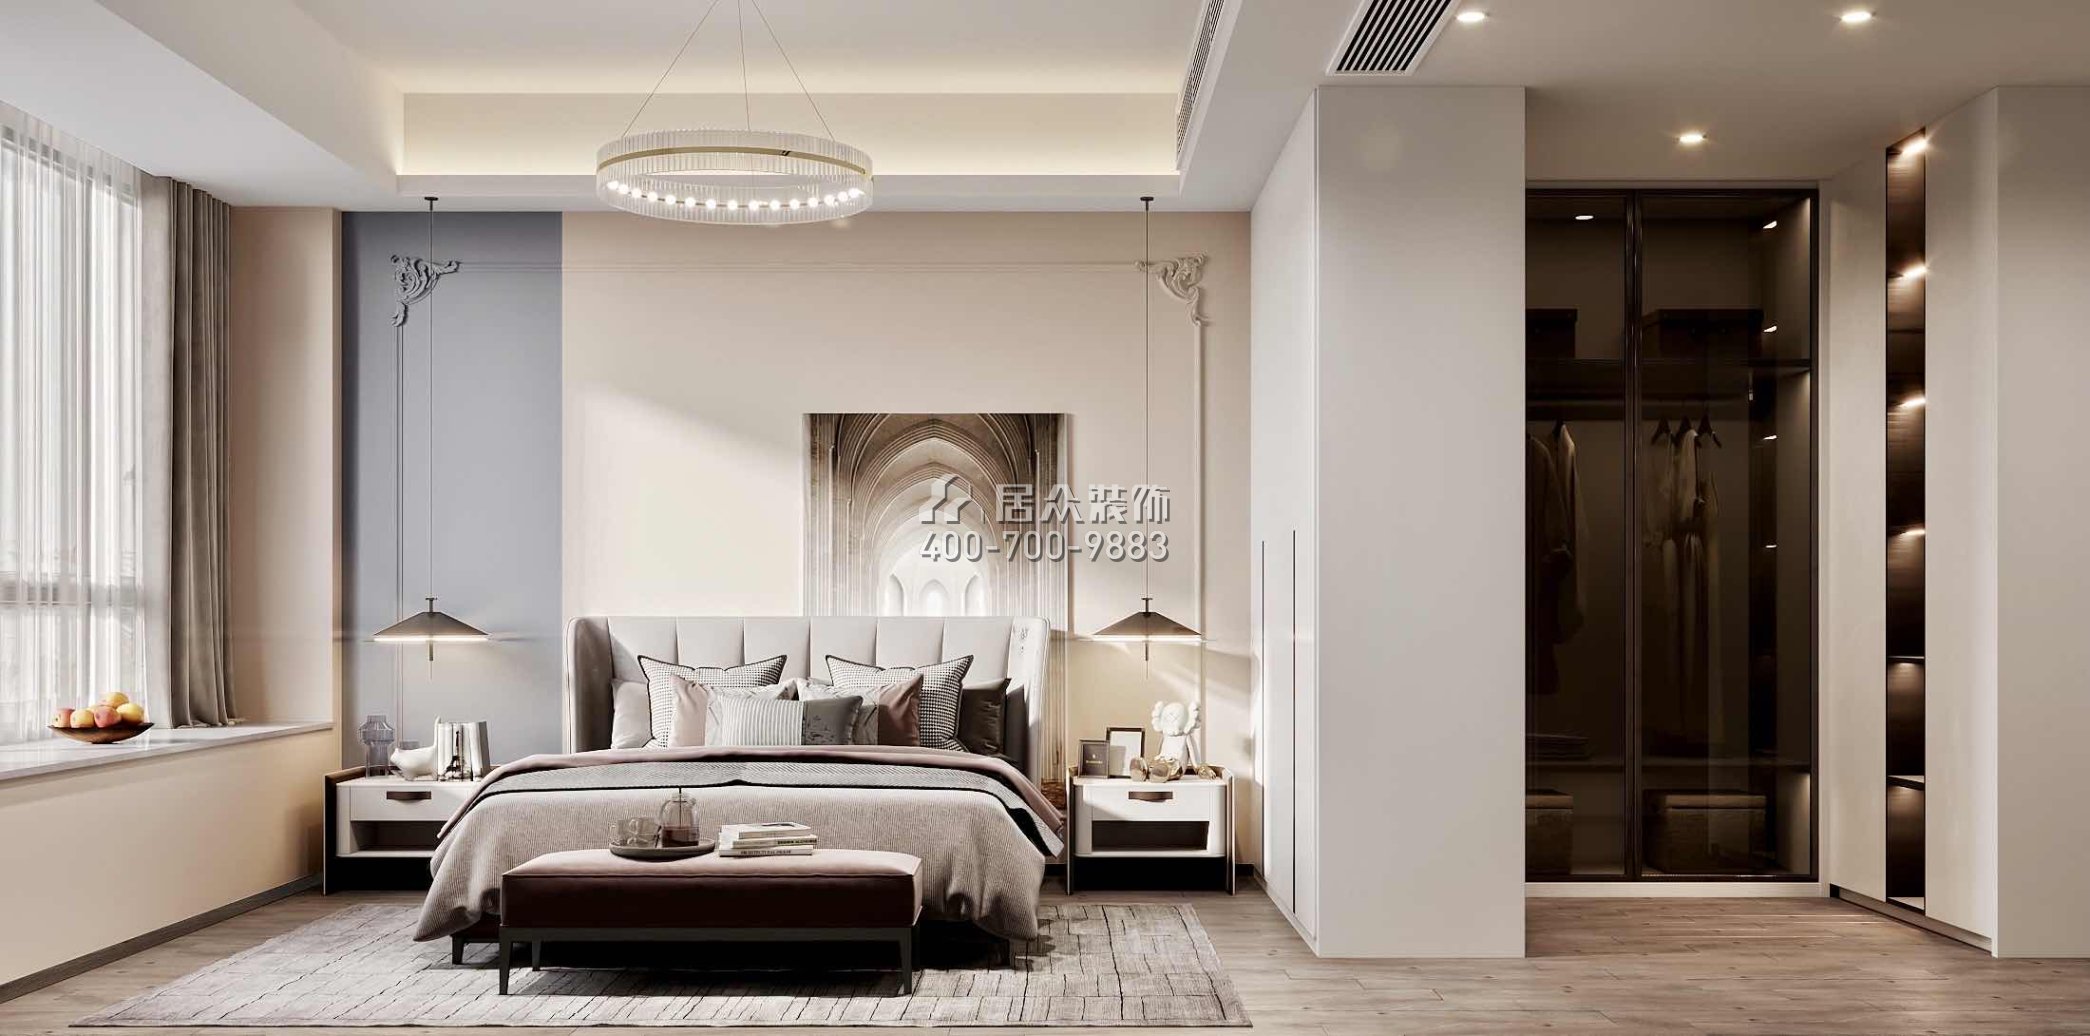 翠湖香山150平方米现代简约风格平层户型卧室开元官网效果图